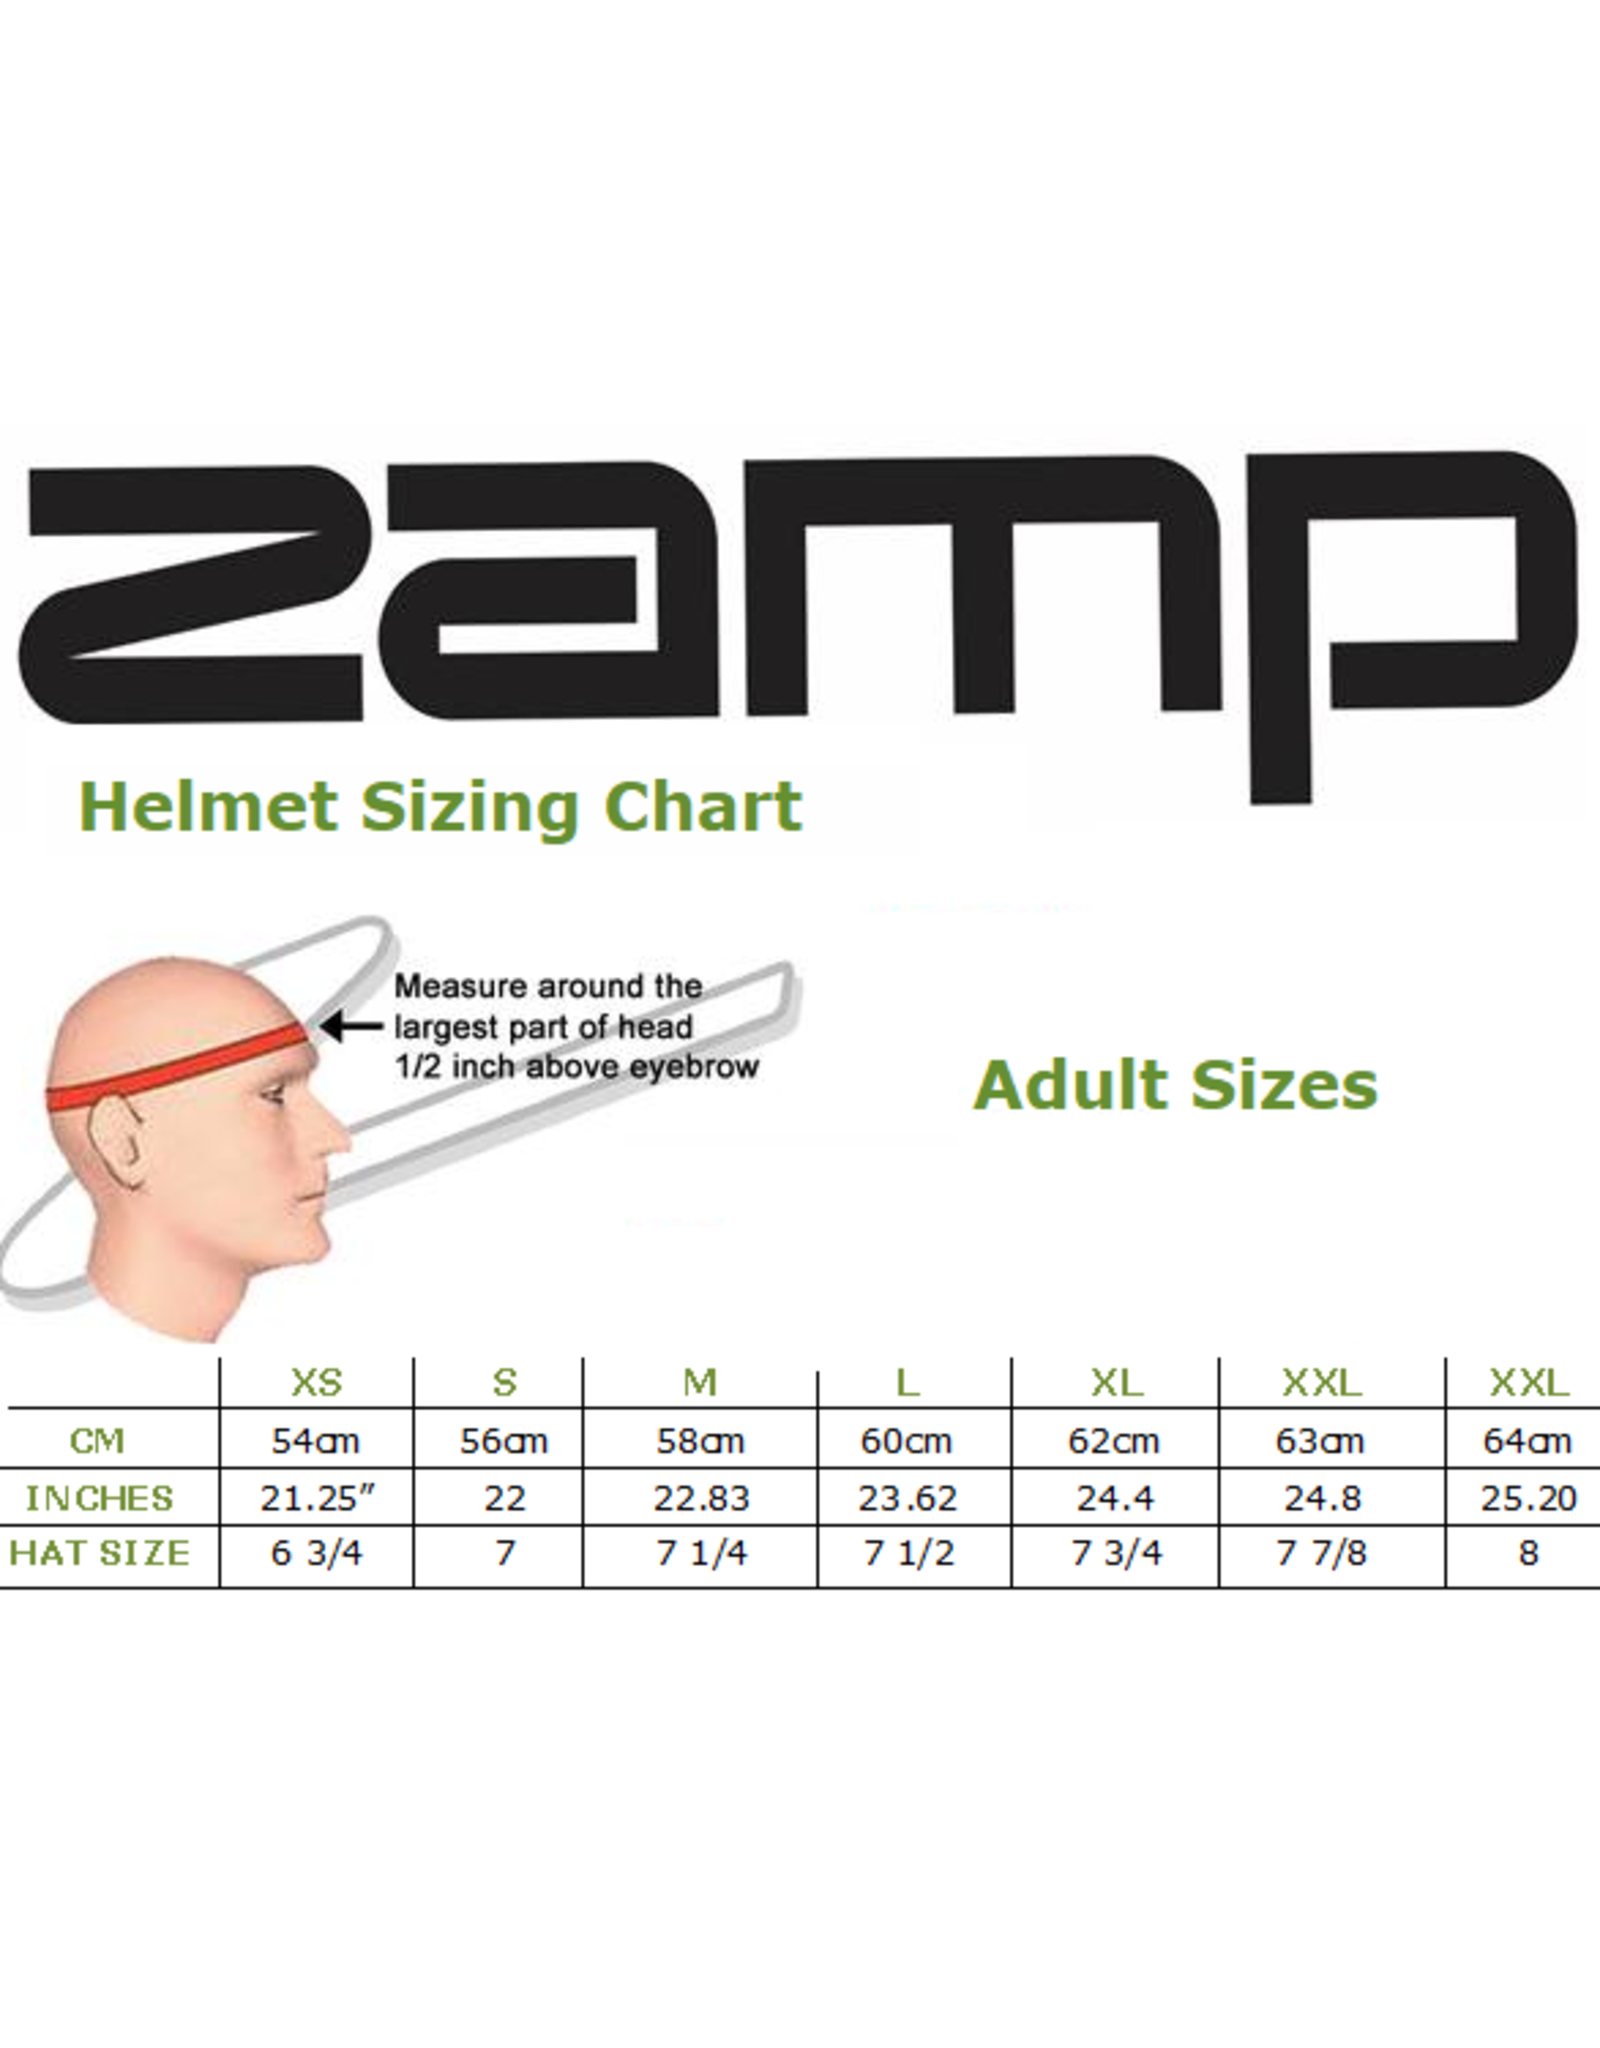 Zamp Zamp RZ-62 wit